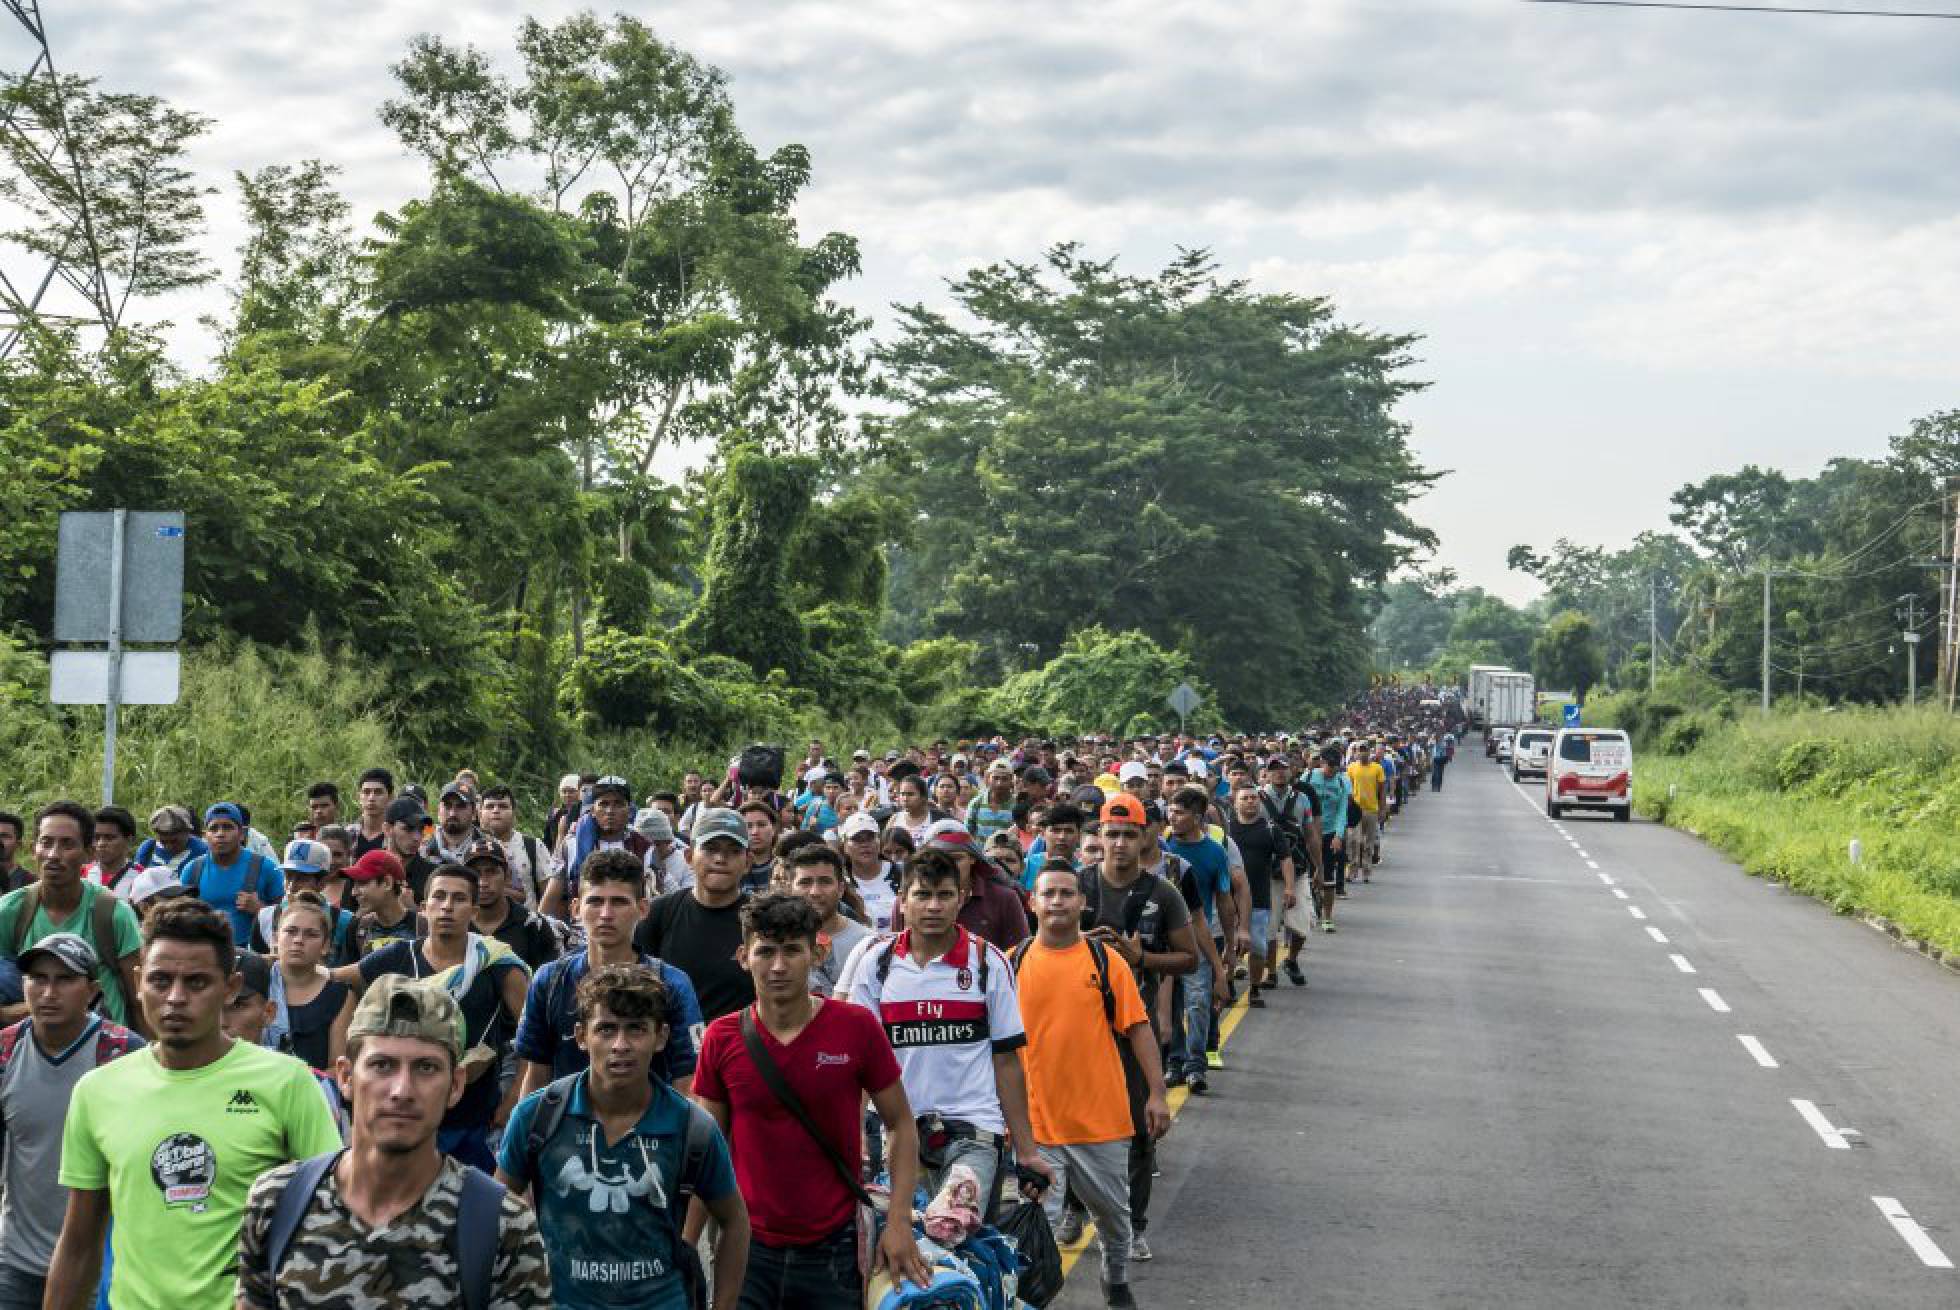 caravana de migrantes